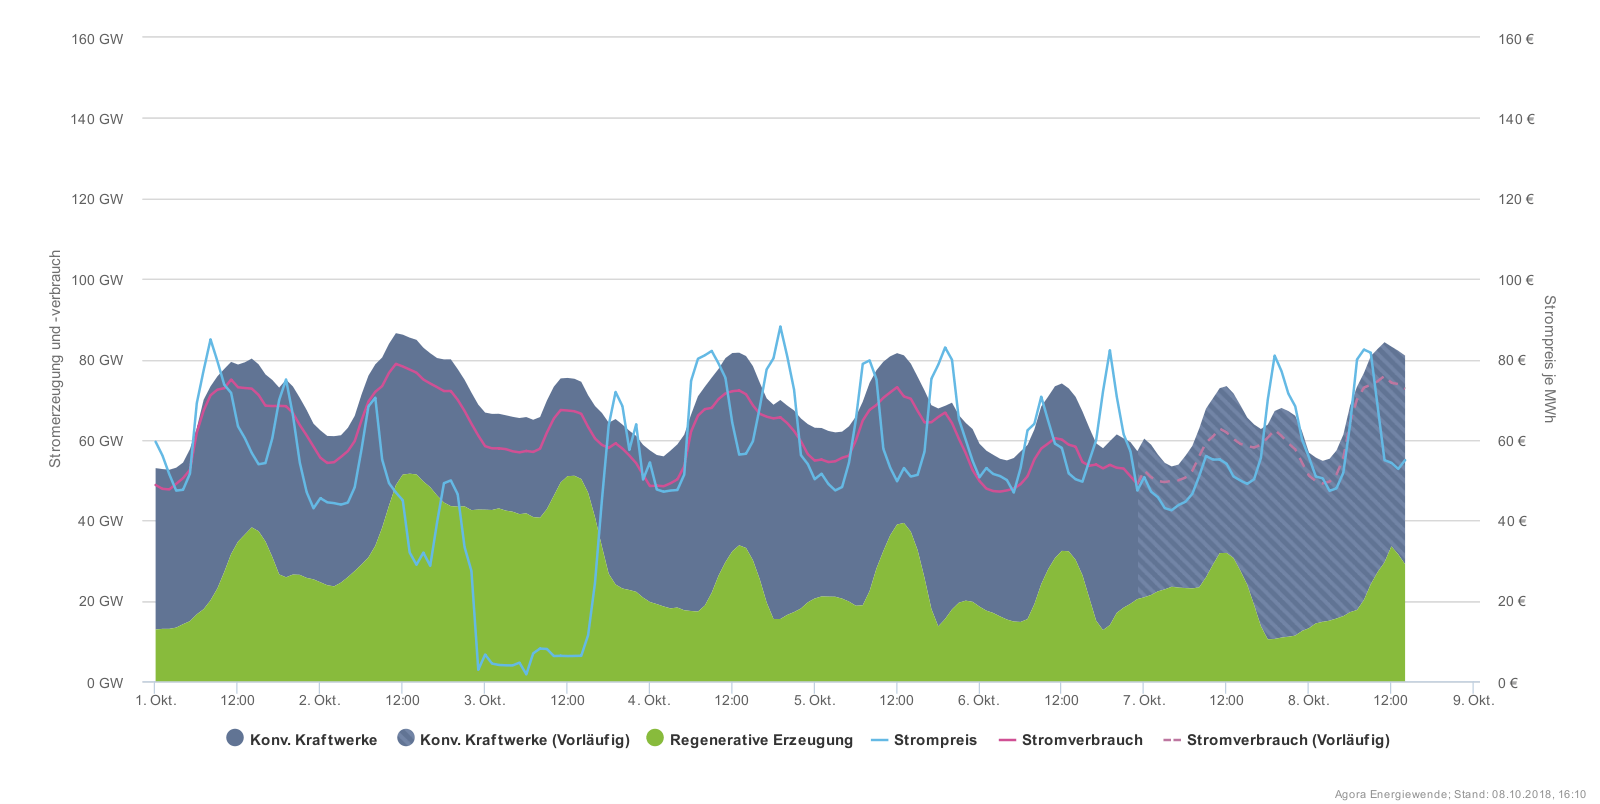 Vysoké ceny dováženého černého uhlí a plynu i nárůst ceny povolenek přispěl k značnému růstu cen silové elektřiny na trhu, která se teď v různých fázích denního diagramu pohybuje mezi 50 až 80 EUR/MWh. V okamžiku, kdy však začne ideálně foukat, klesne cena k nule nebo dokonce do záporných hodnot. (Zdroj Agora)